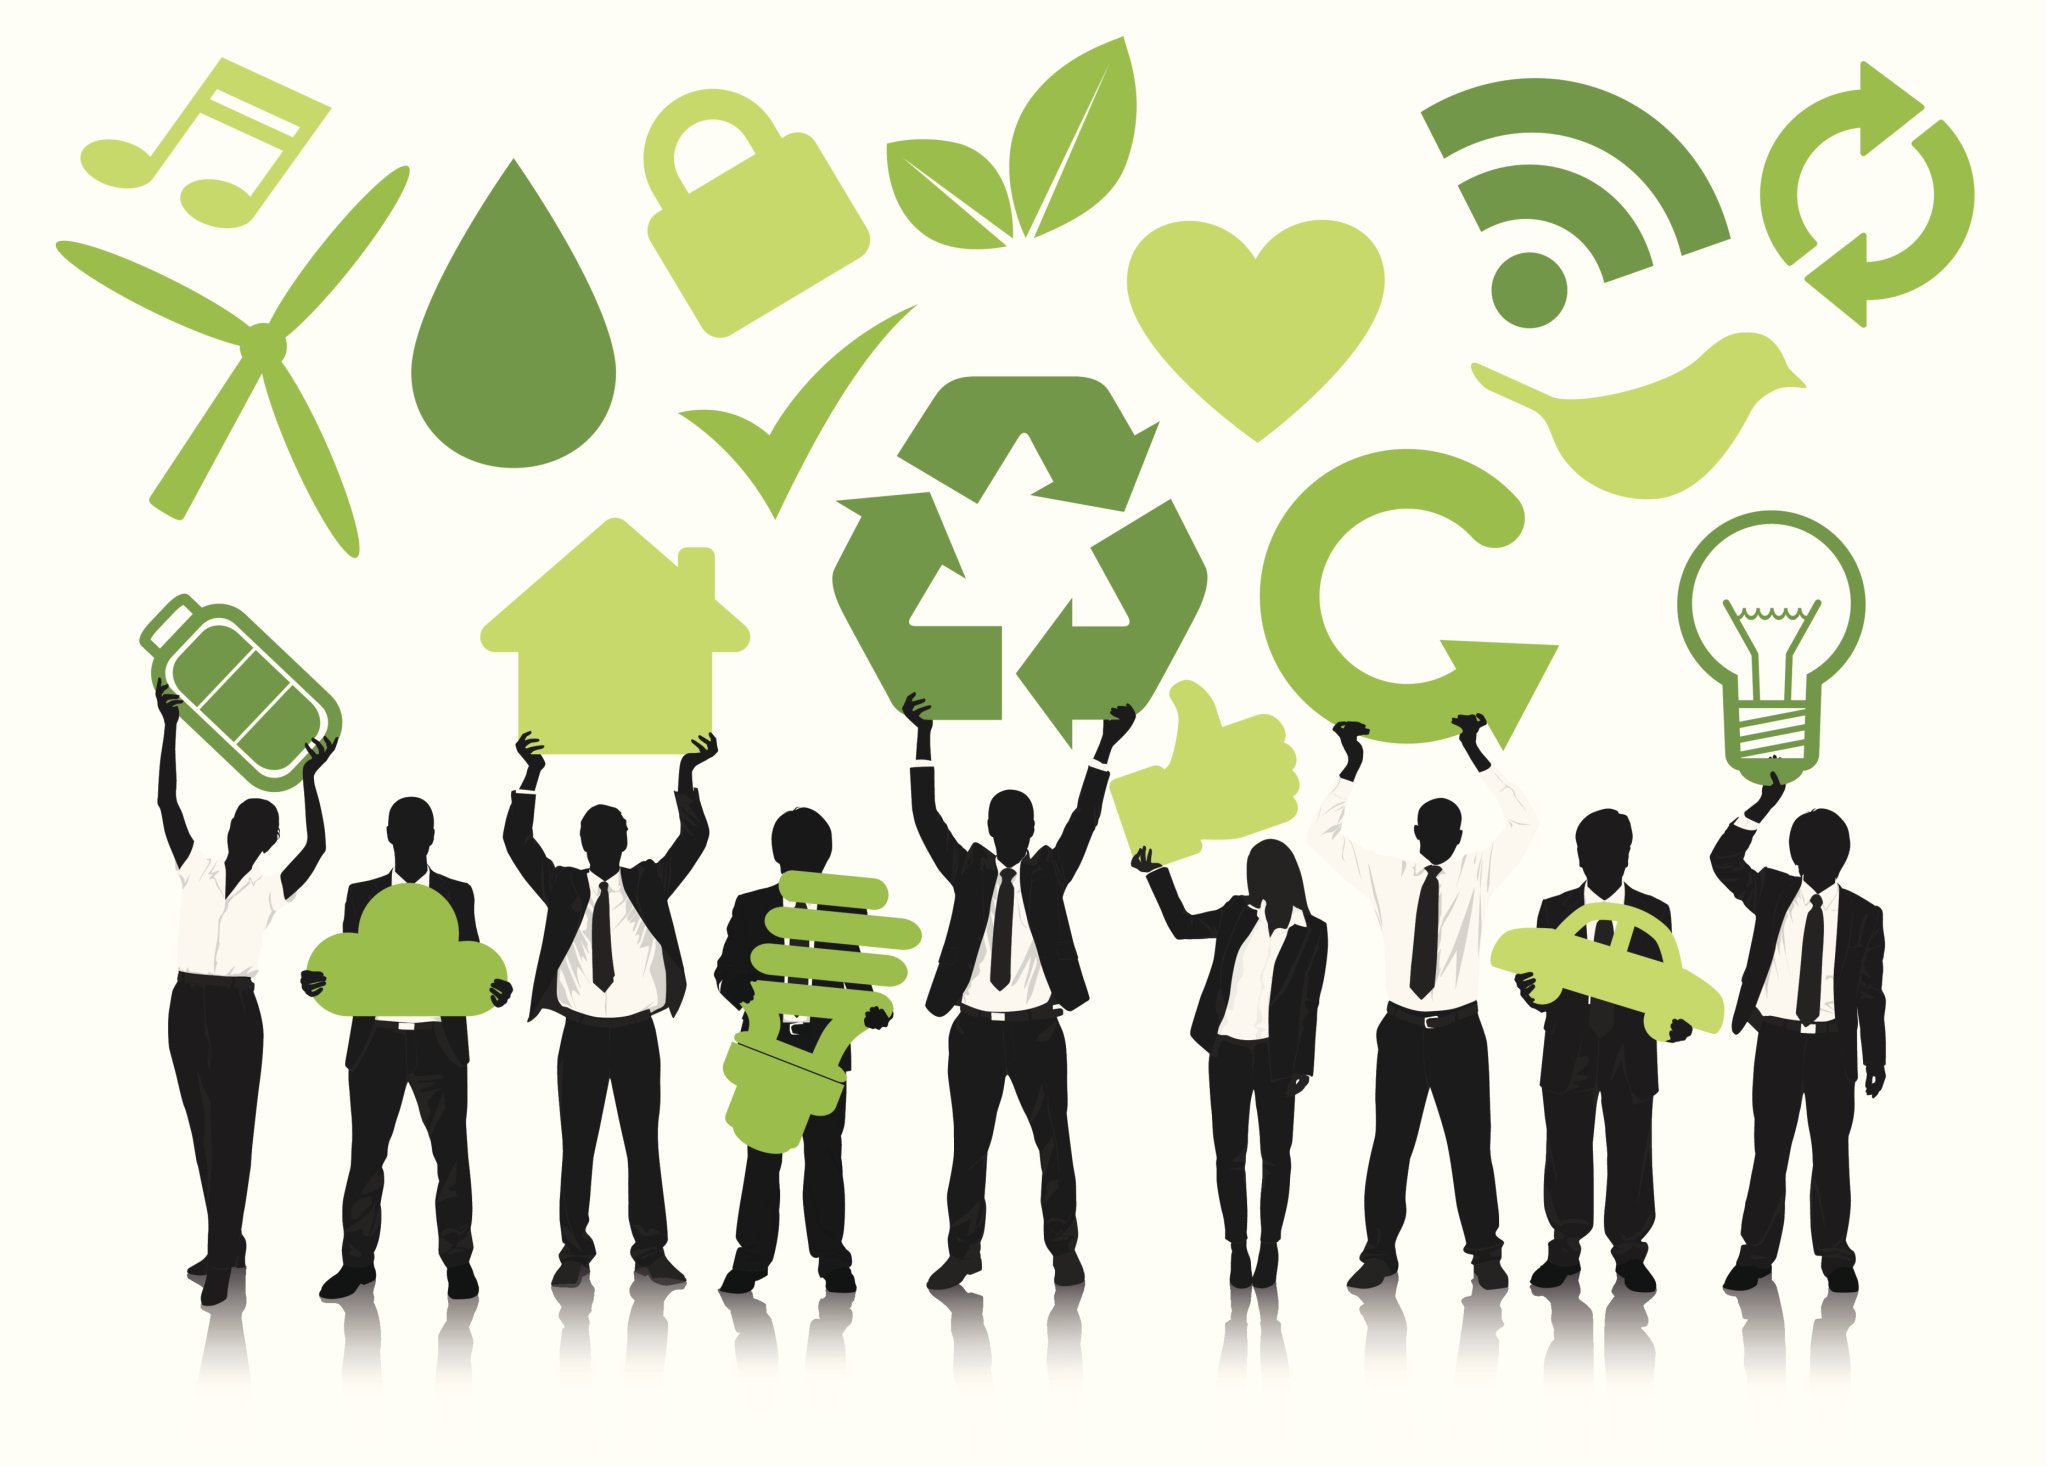 Прогресс коммуникаций. Значок экологии. Экологичный бизнес. Маркетинг иллюстрация в зеленых тонах. Зеленый менеджмент.